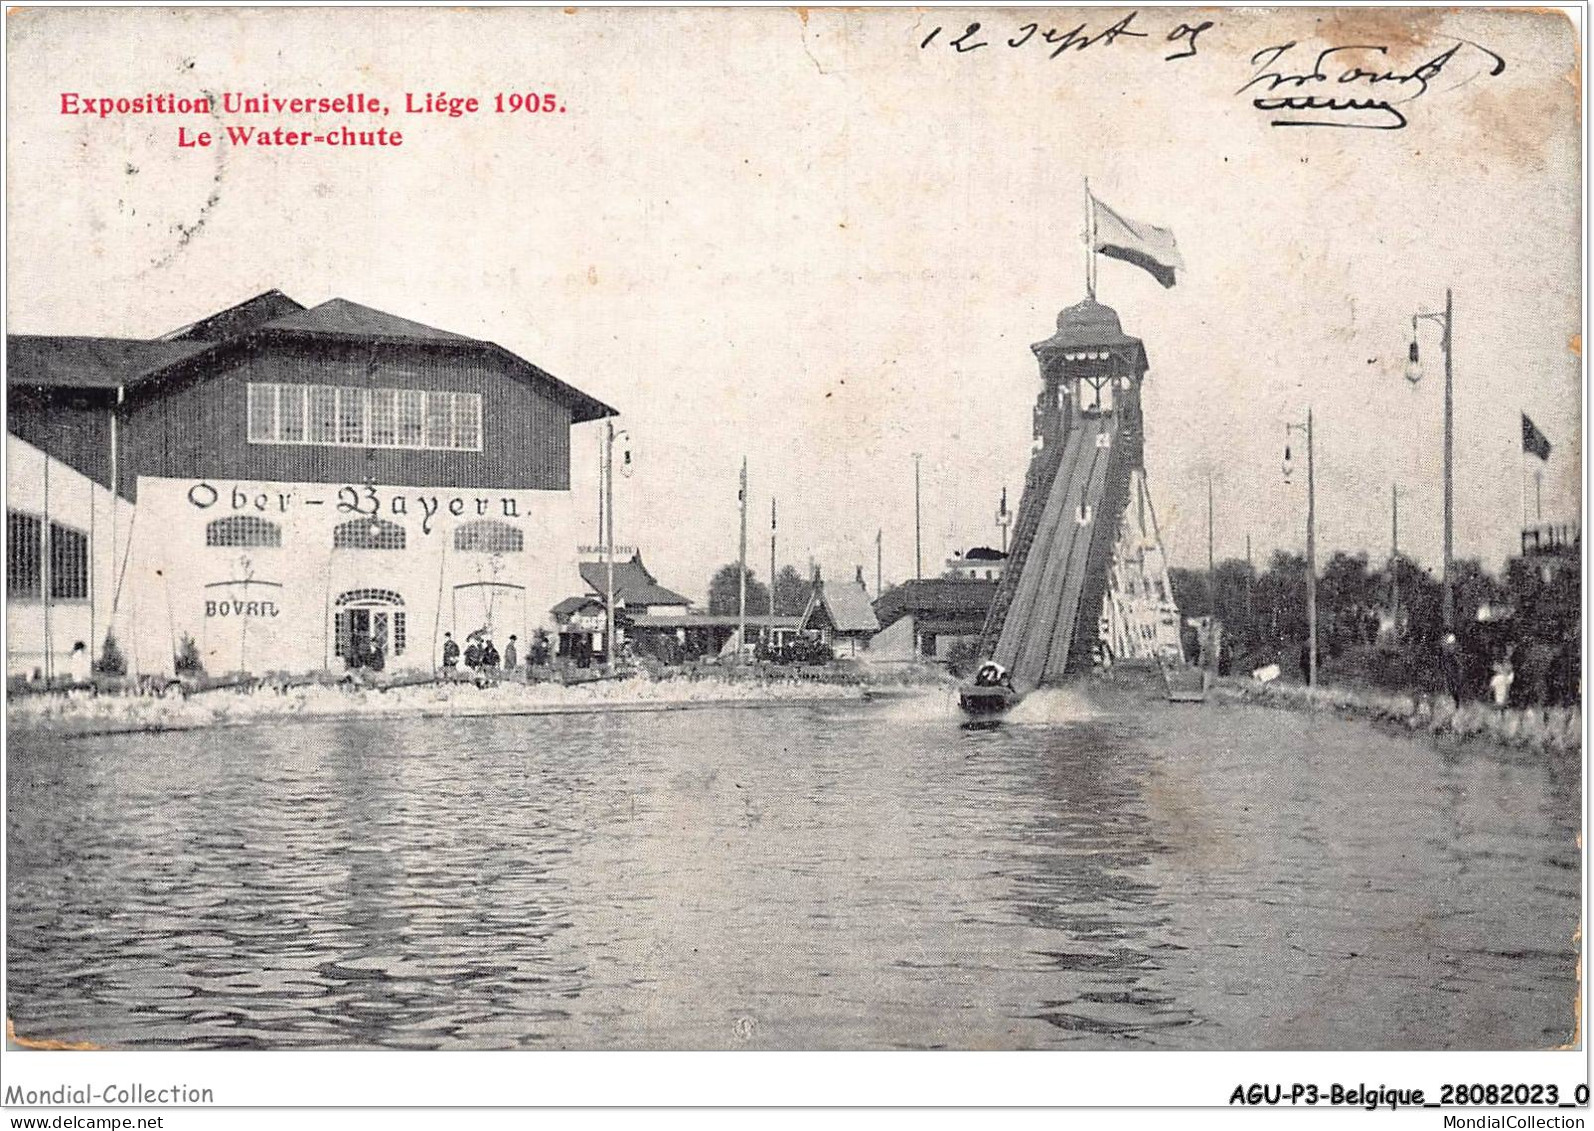 AGUP3-0144-BELGIQUE - Exposition Universelle - LIEGE 1905 - Le Water-chute - Liege